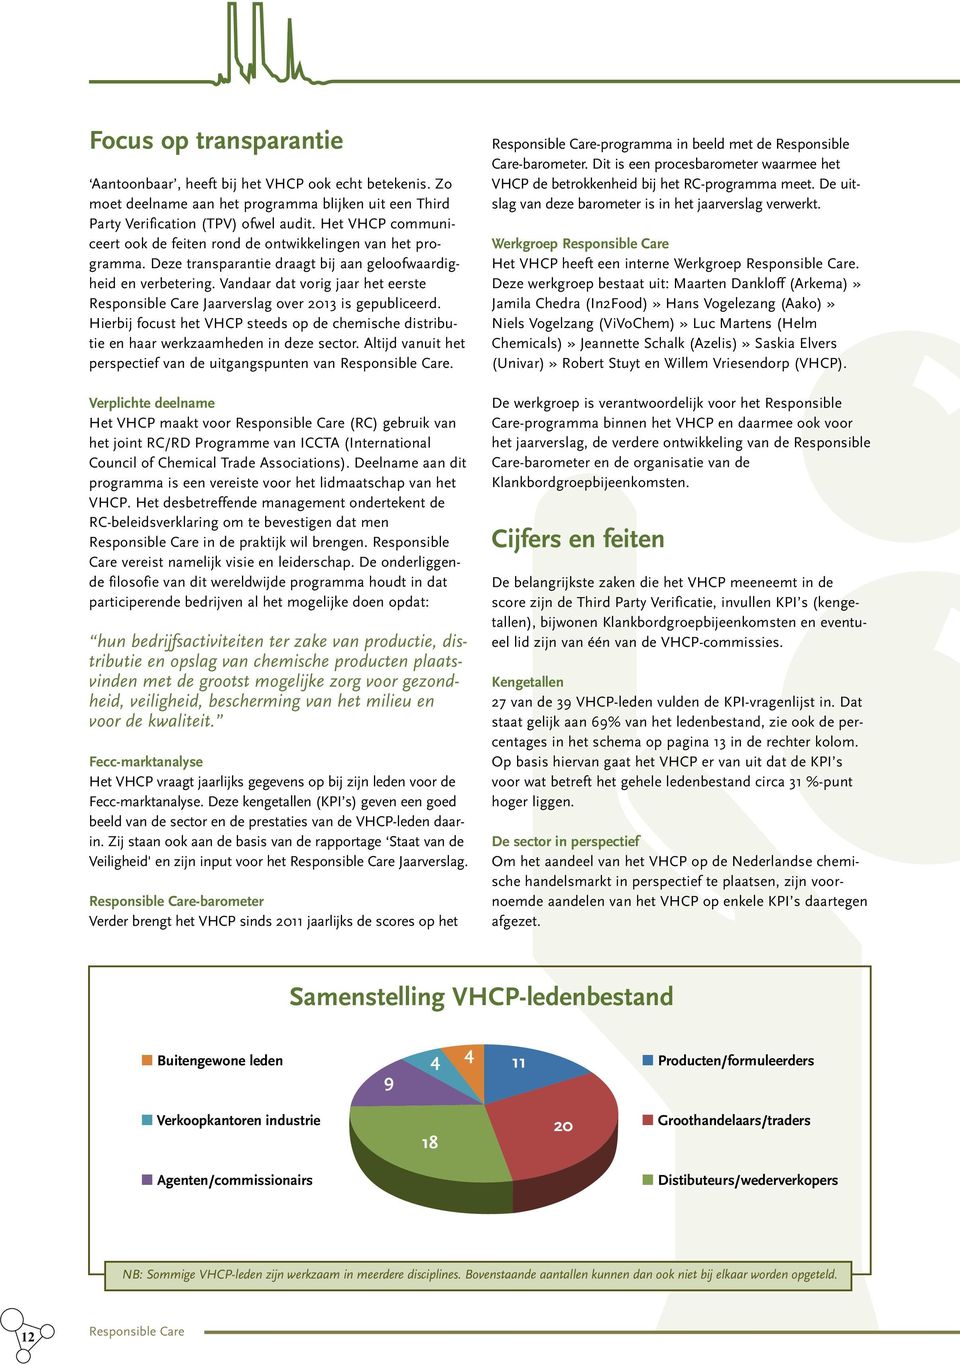 Vandaar dat vorig jaar het eerste Responsible Care Jaarverslag over 2013 is gepubliceerd. Hierbij focust het VHCP steeds op de chemische distributie en haar werkzaamheden in deze sector.